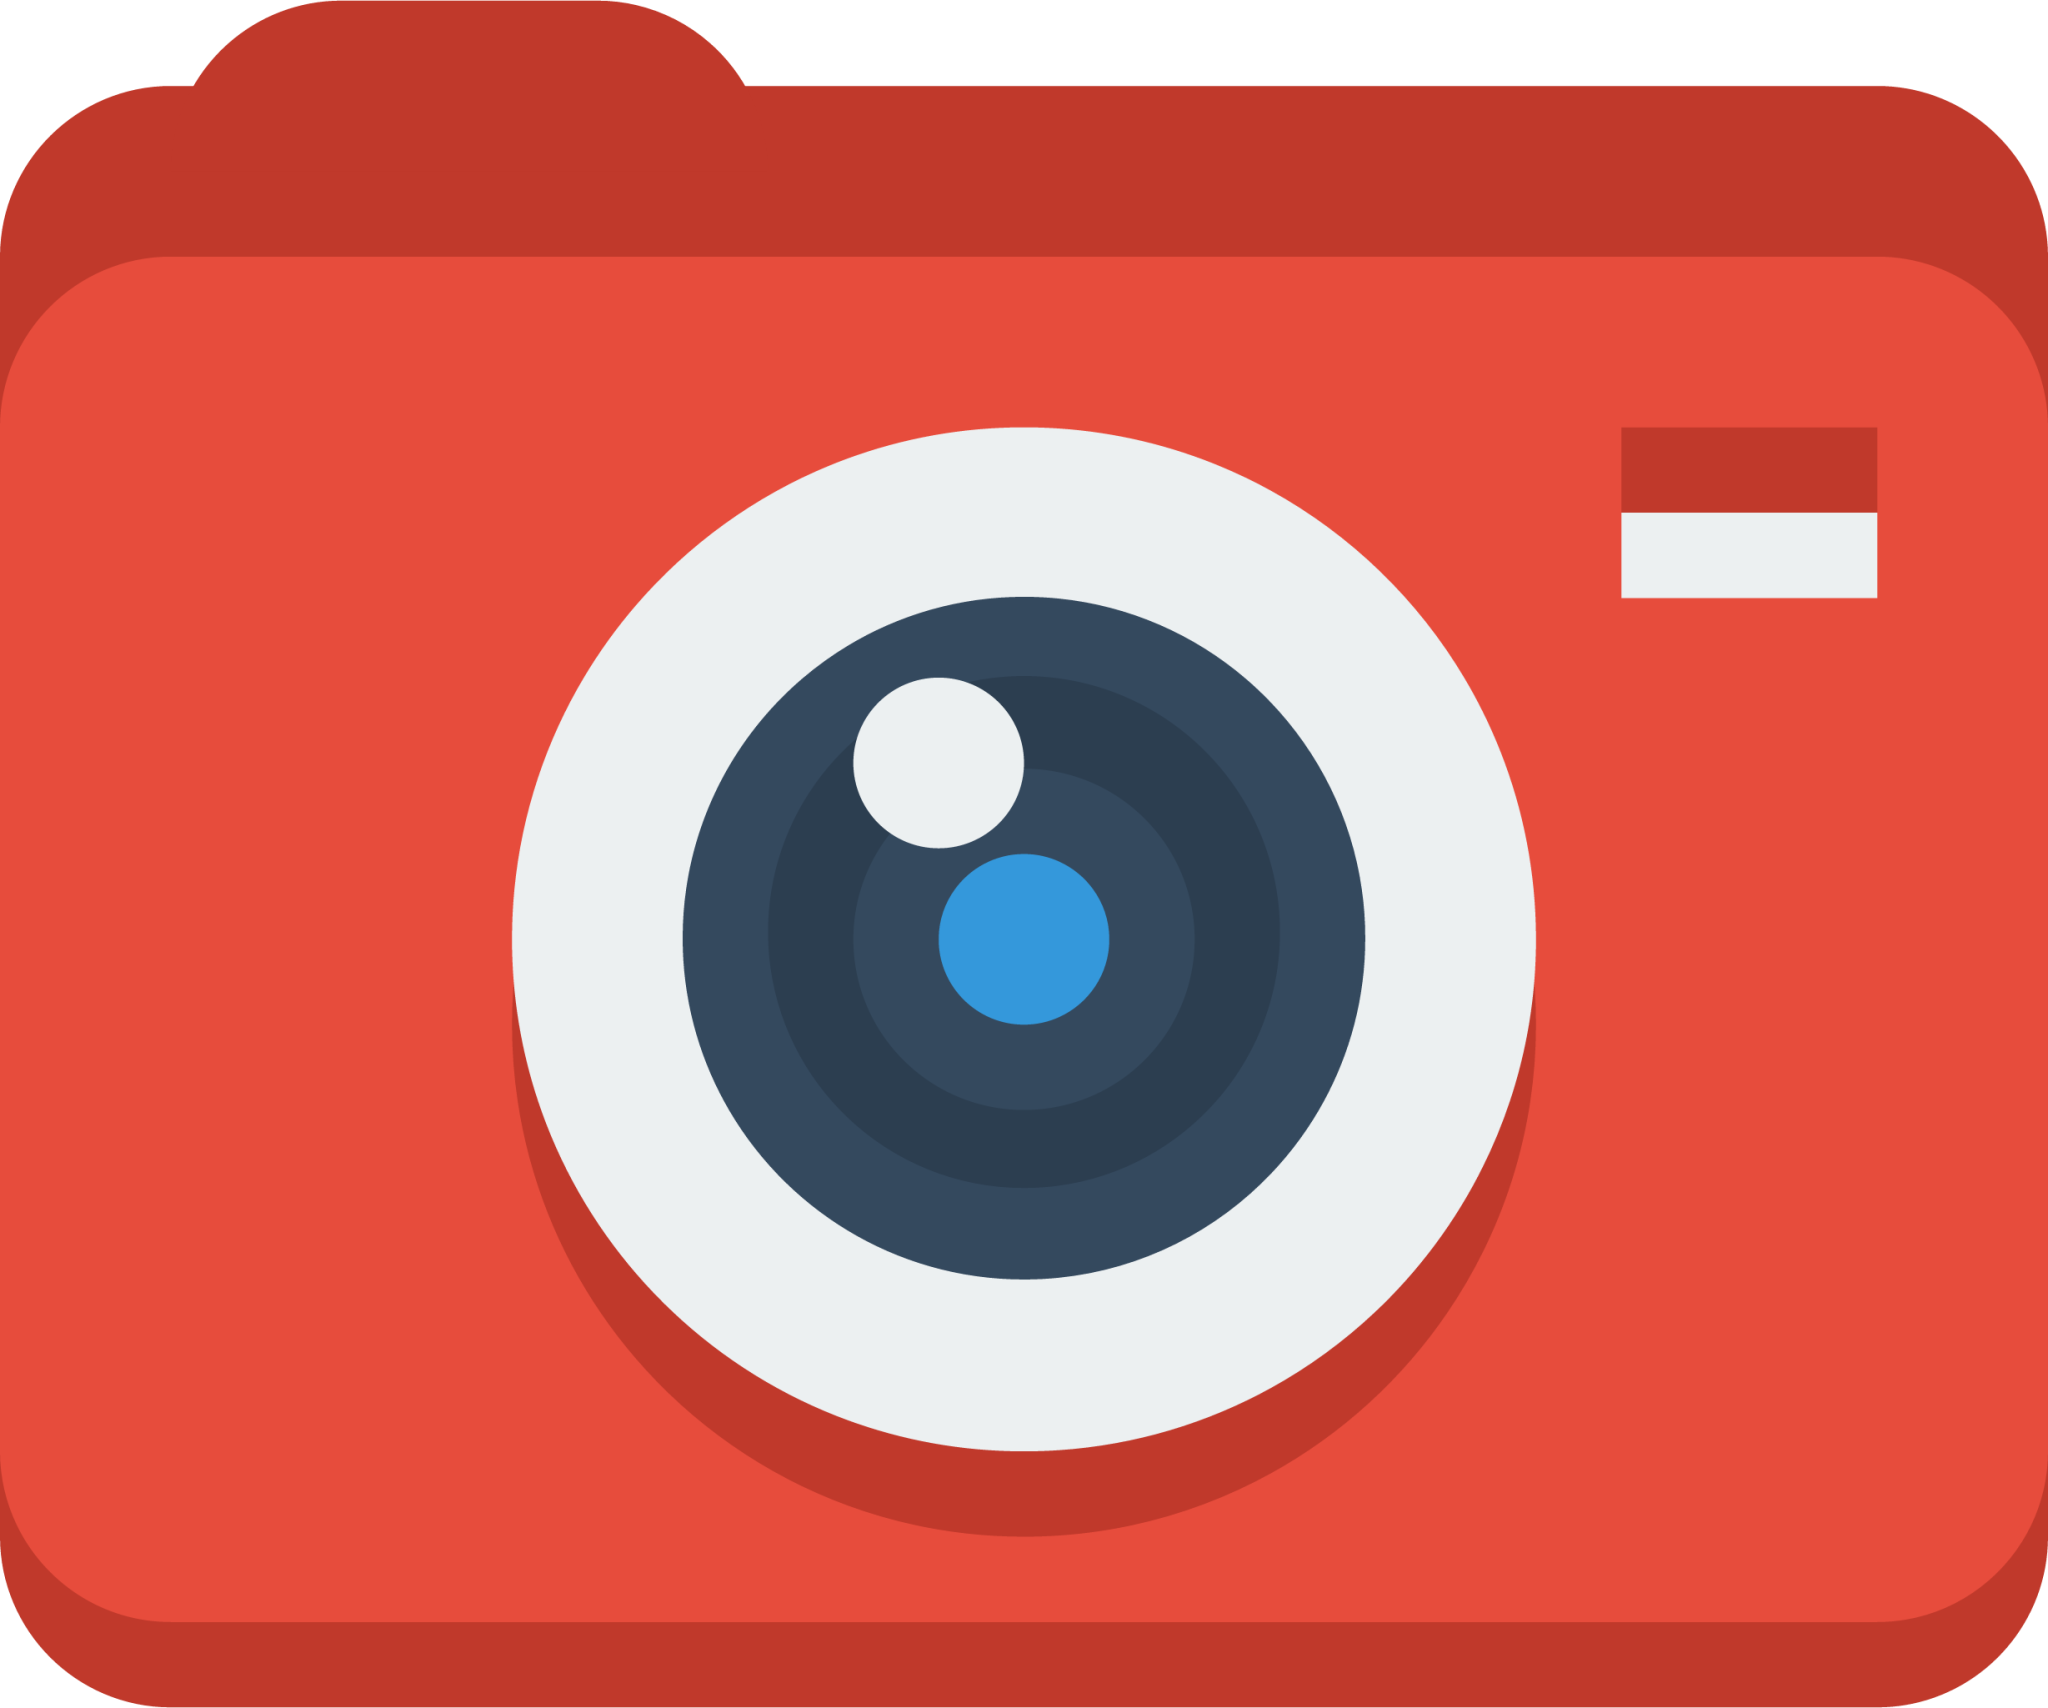 device camera icon